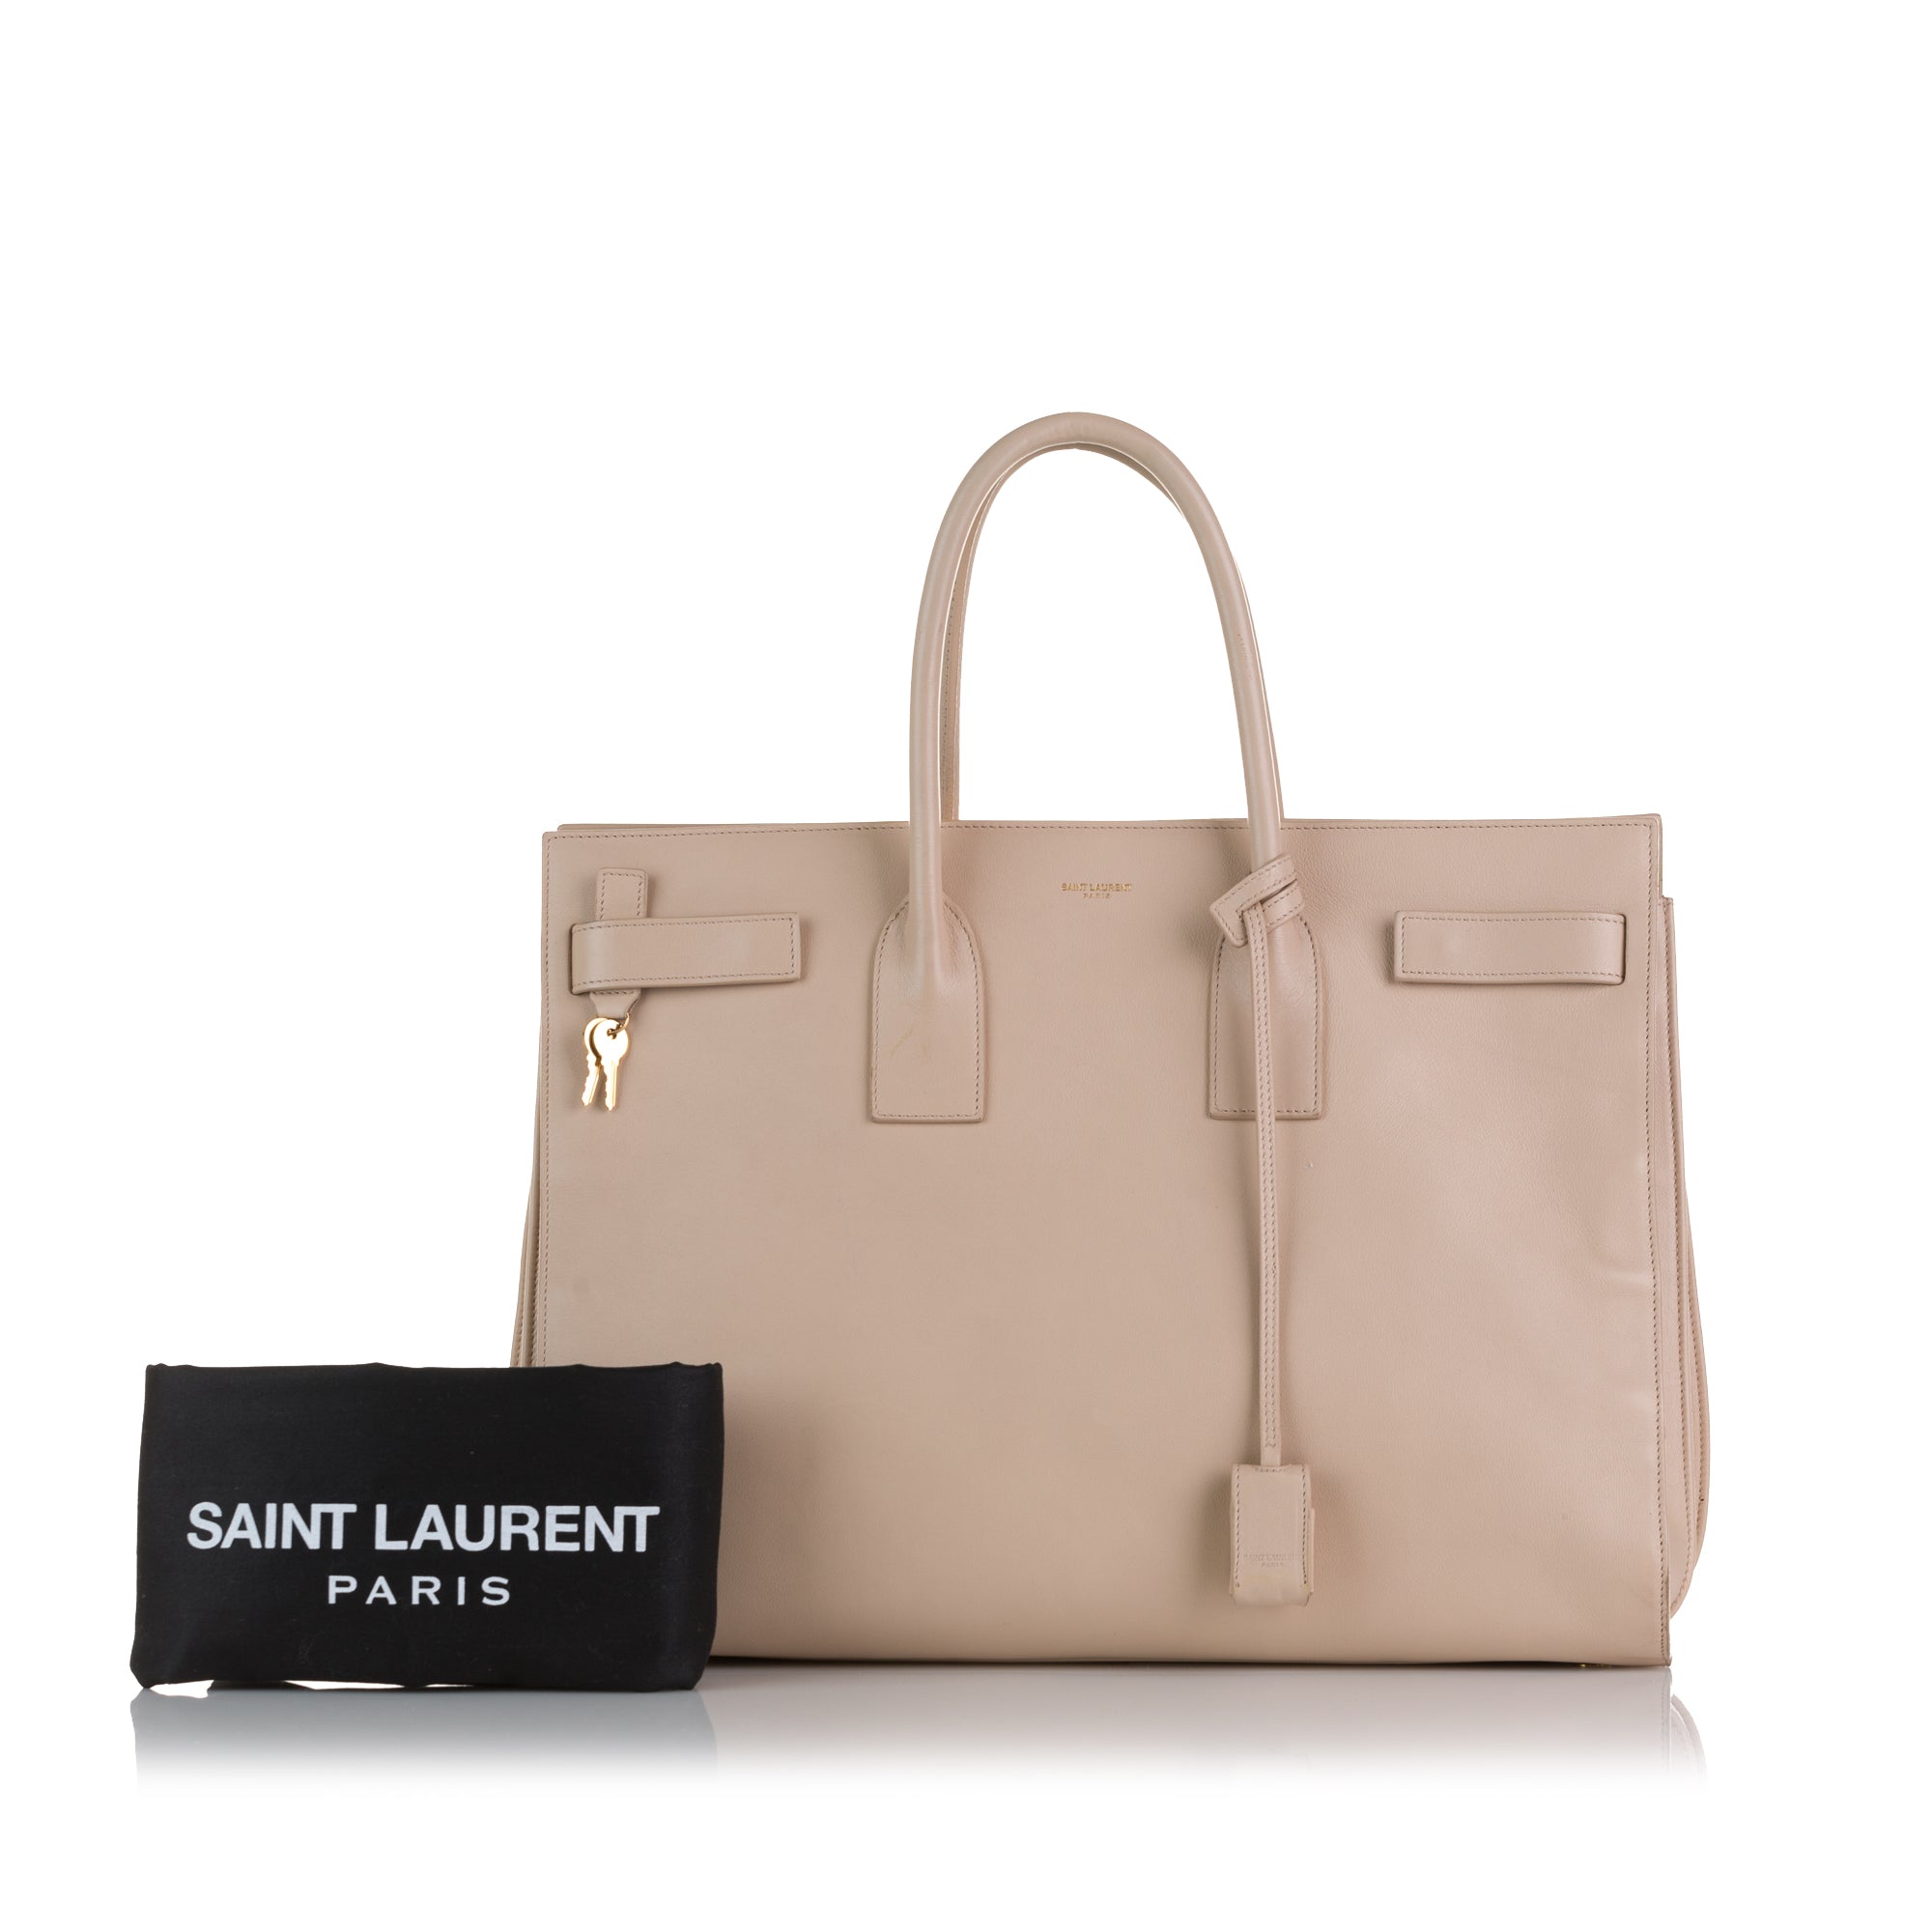 Saint Laurent (YSL) Sac de Jour Small & Baby Review and Comparison